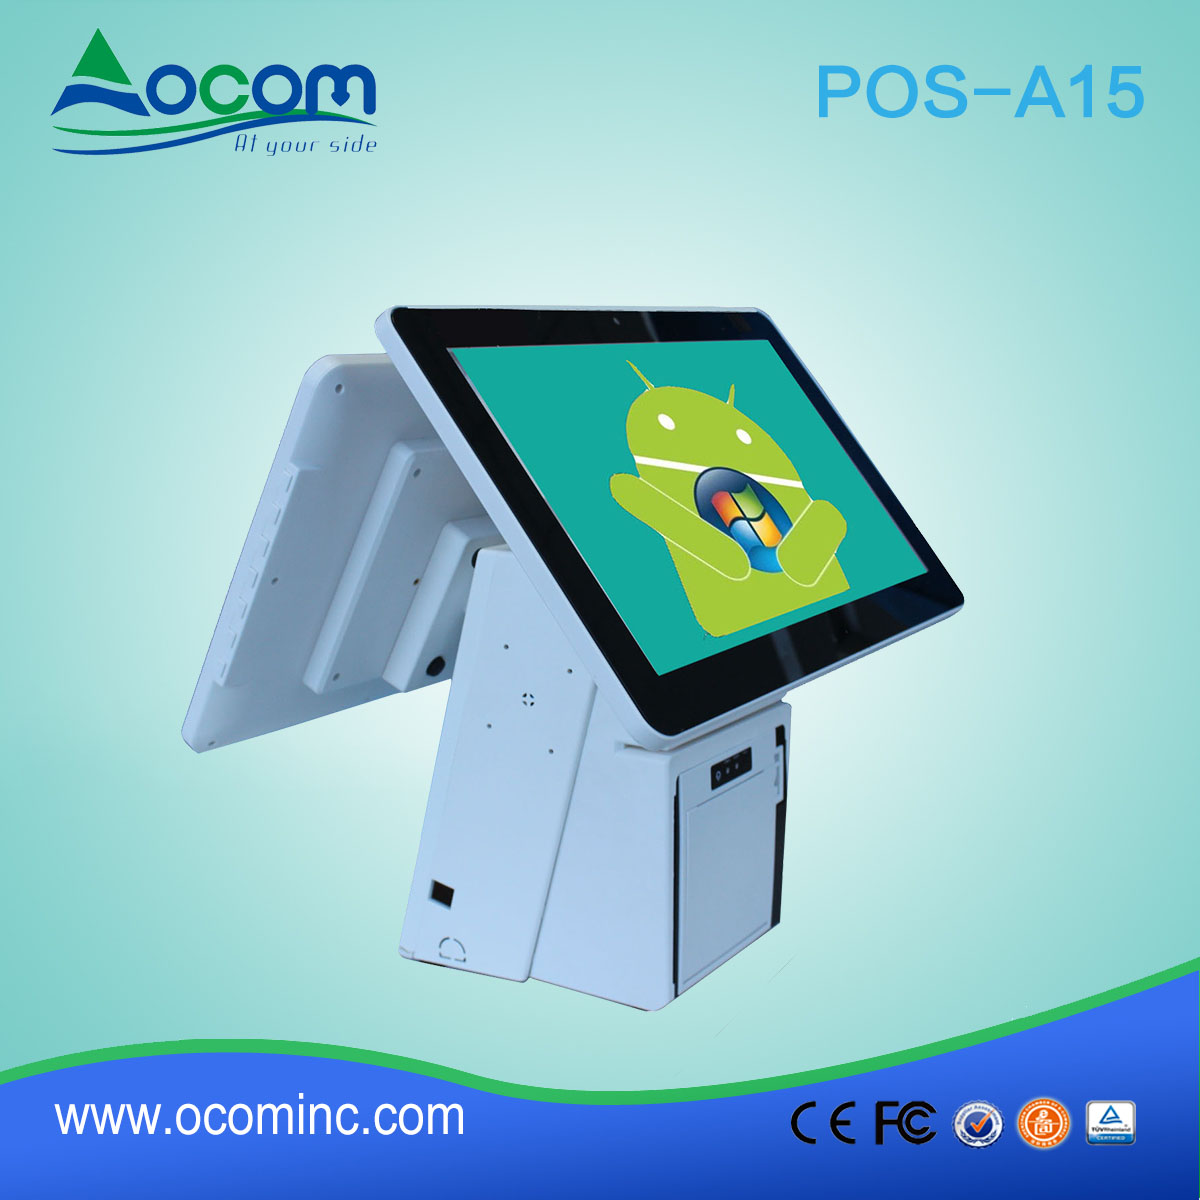 (POS-A15) 15,6 pollici tutti ine il Touch sreen terminale POS con stampante termica